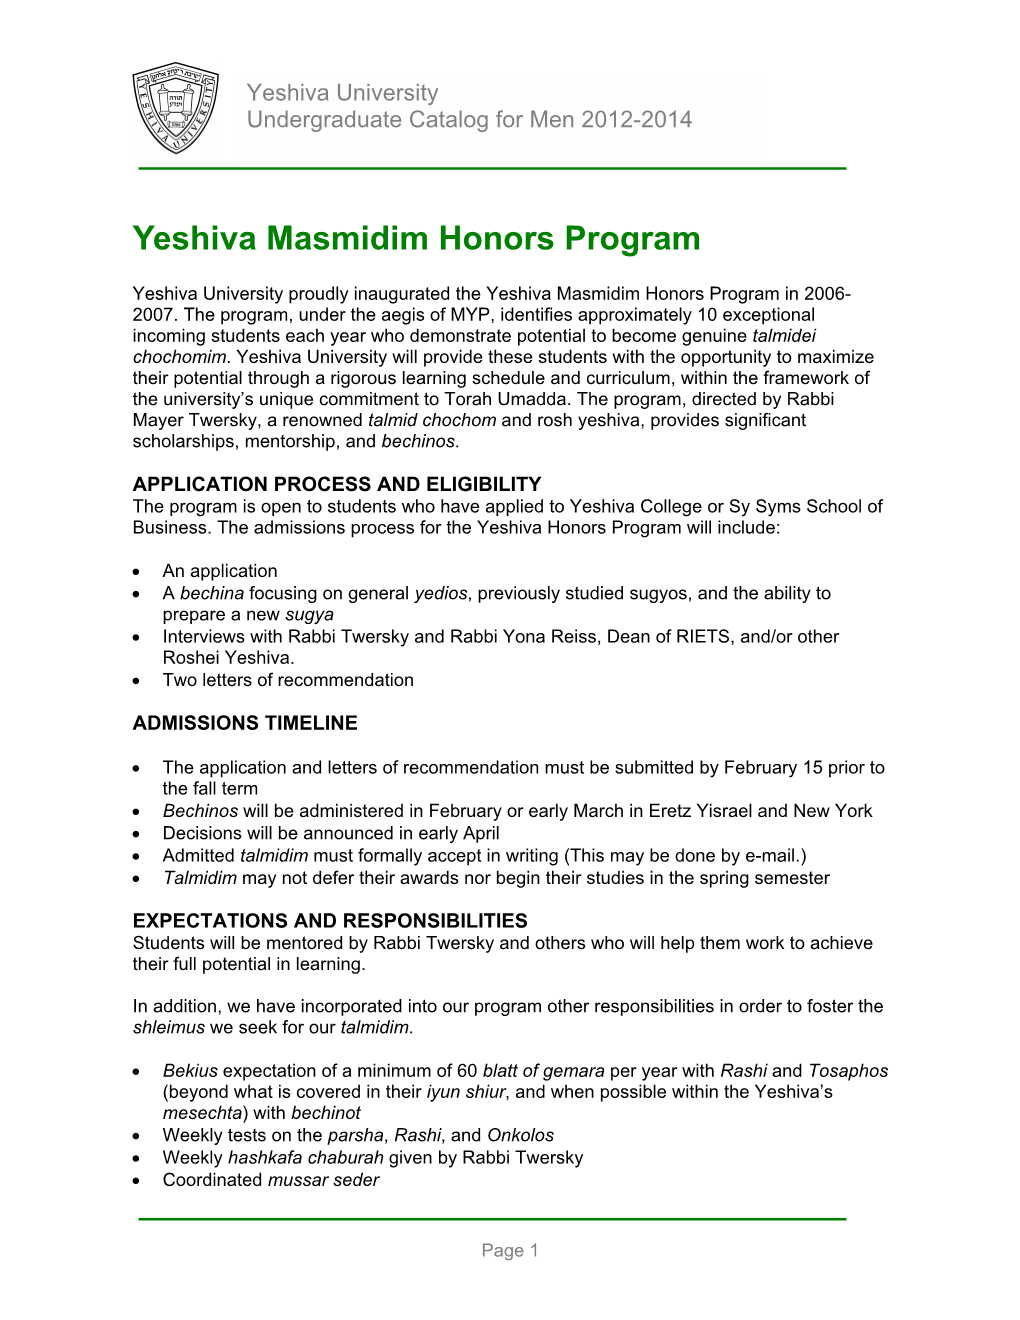 Yeshiva Masmidim Honors Program